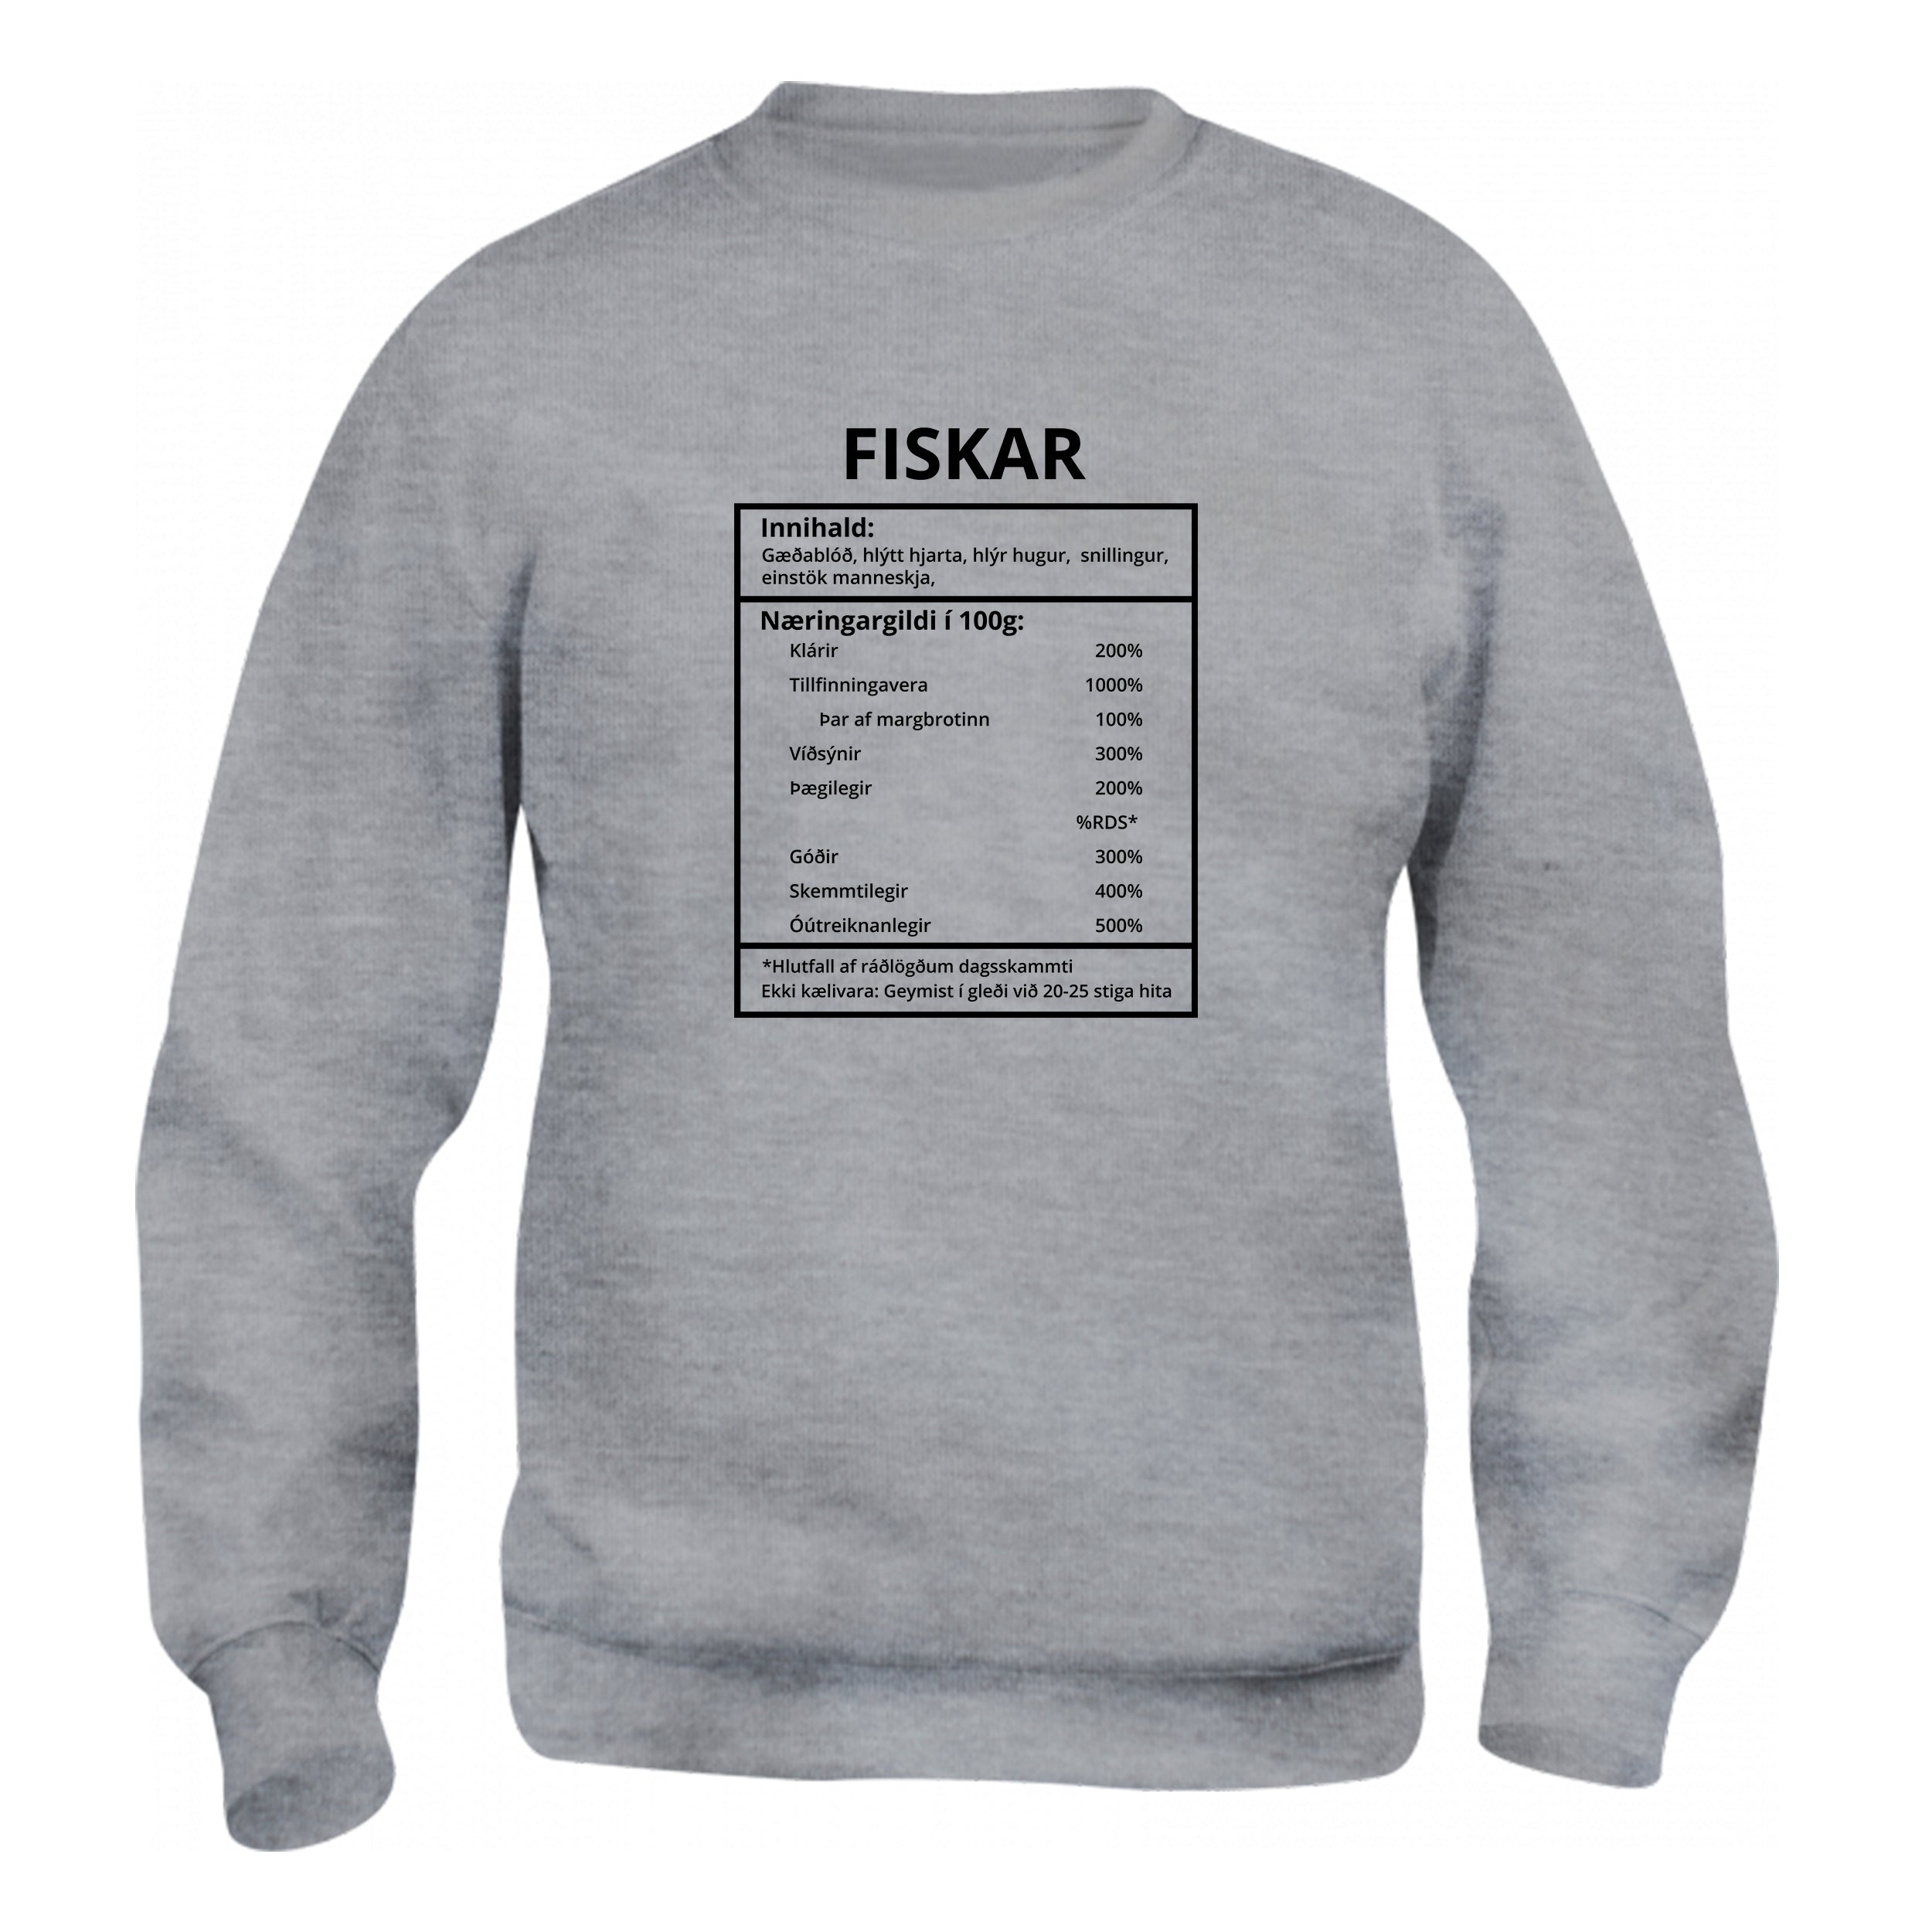 Fiskar - Sweatshirt